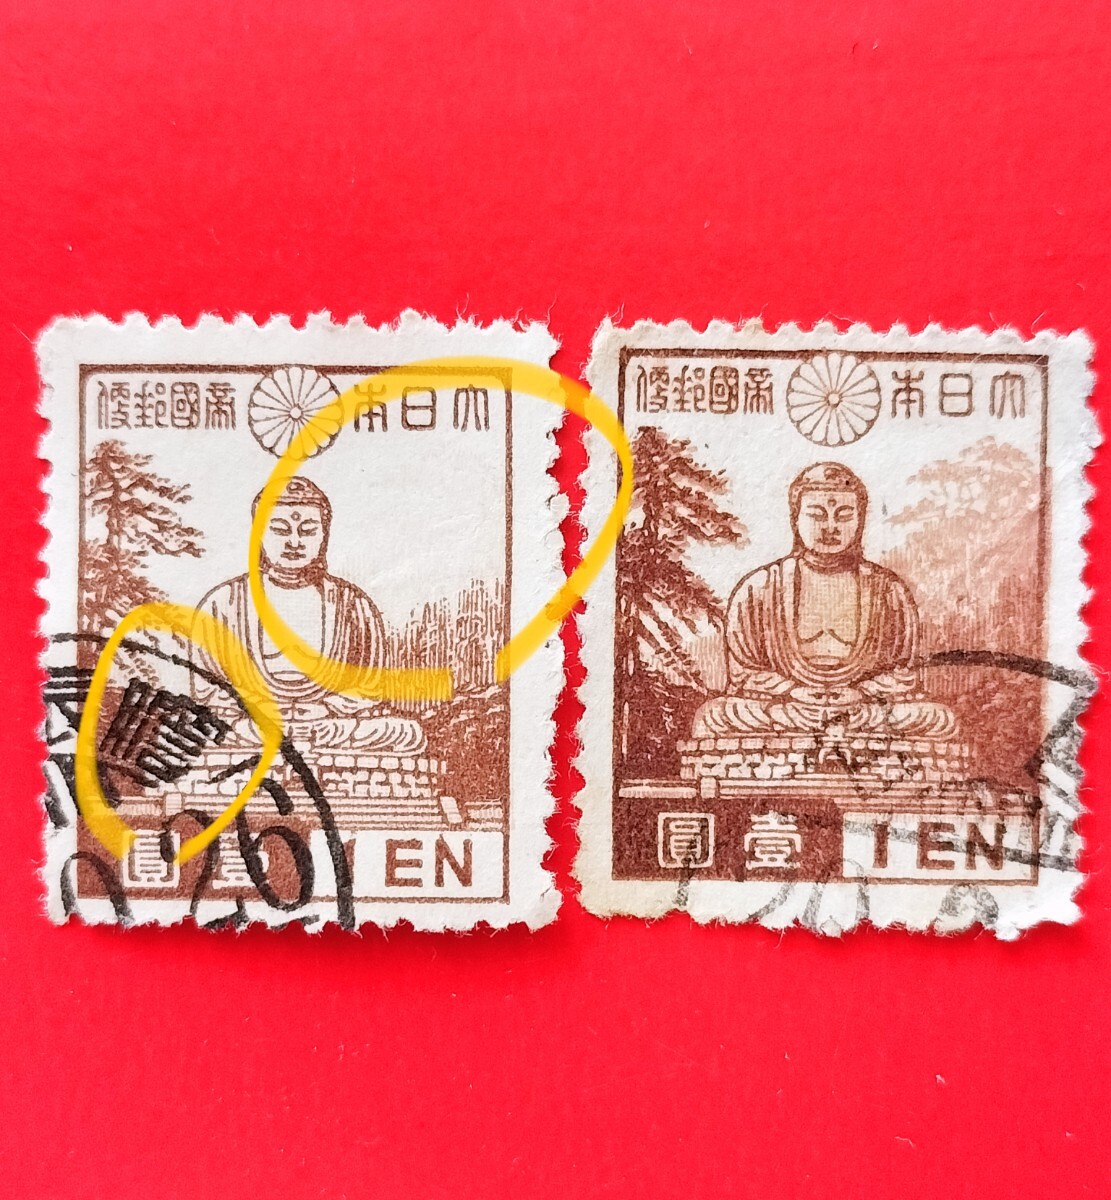 エラー切手 背景森なし 昭和 (249)の画像1